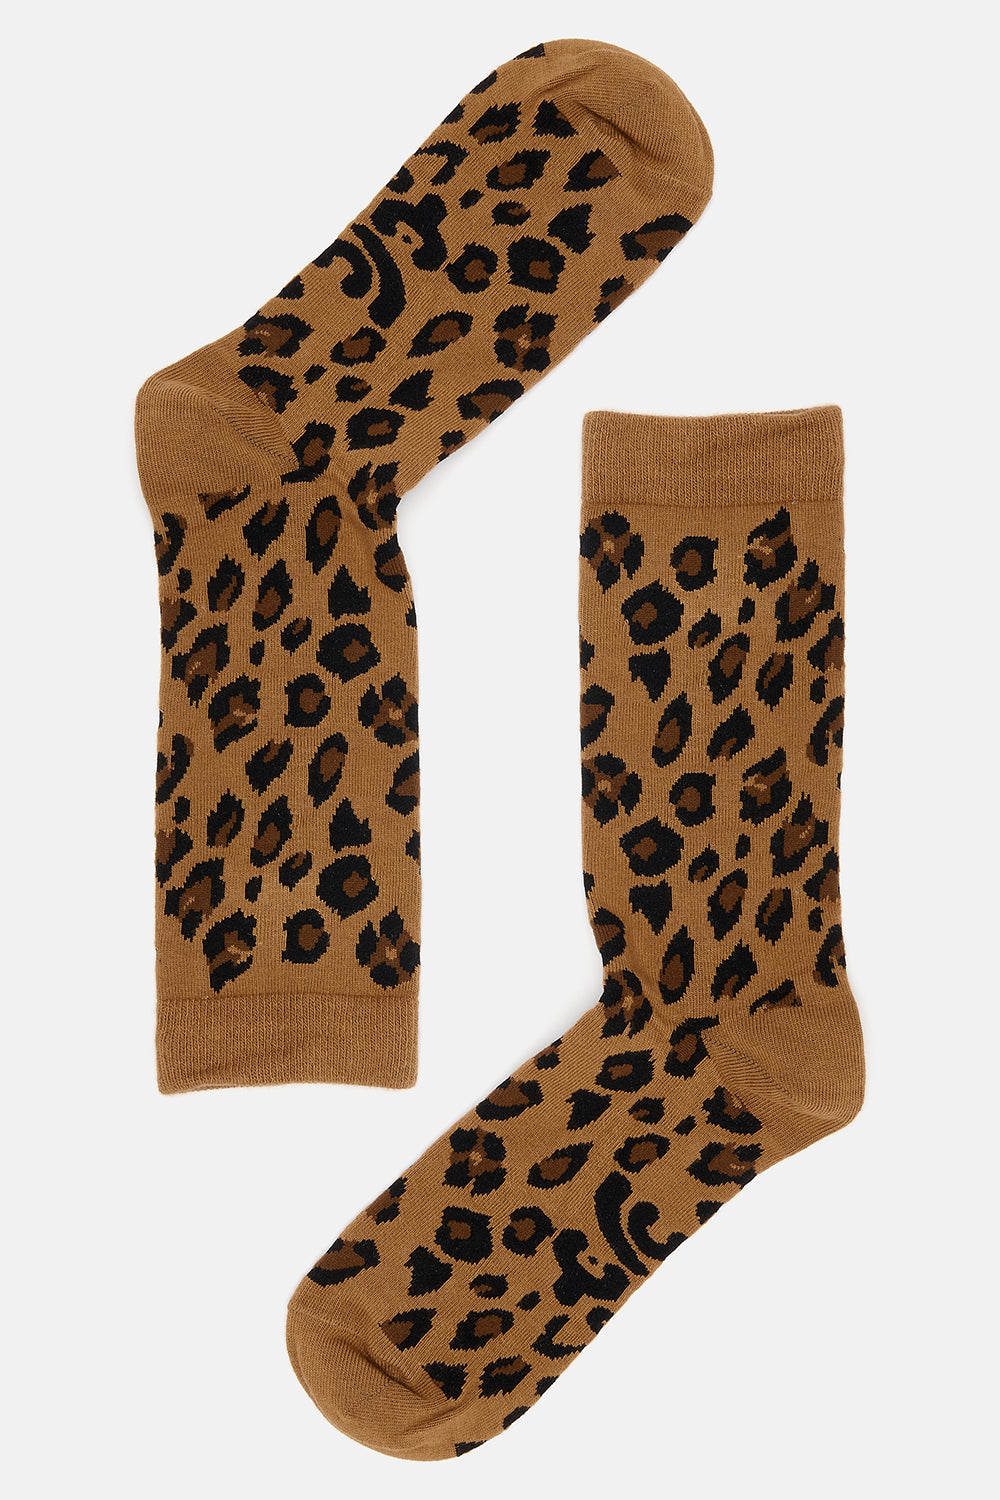 JoJo - Cotton Socks in Leopard Print